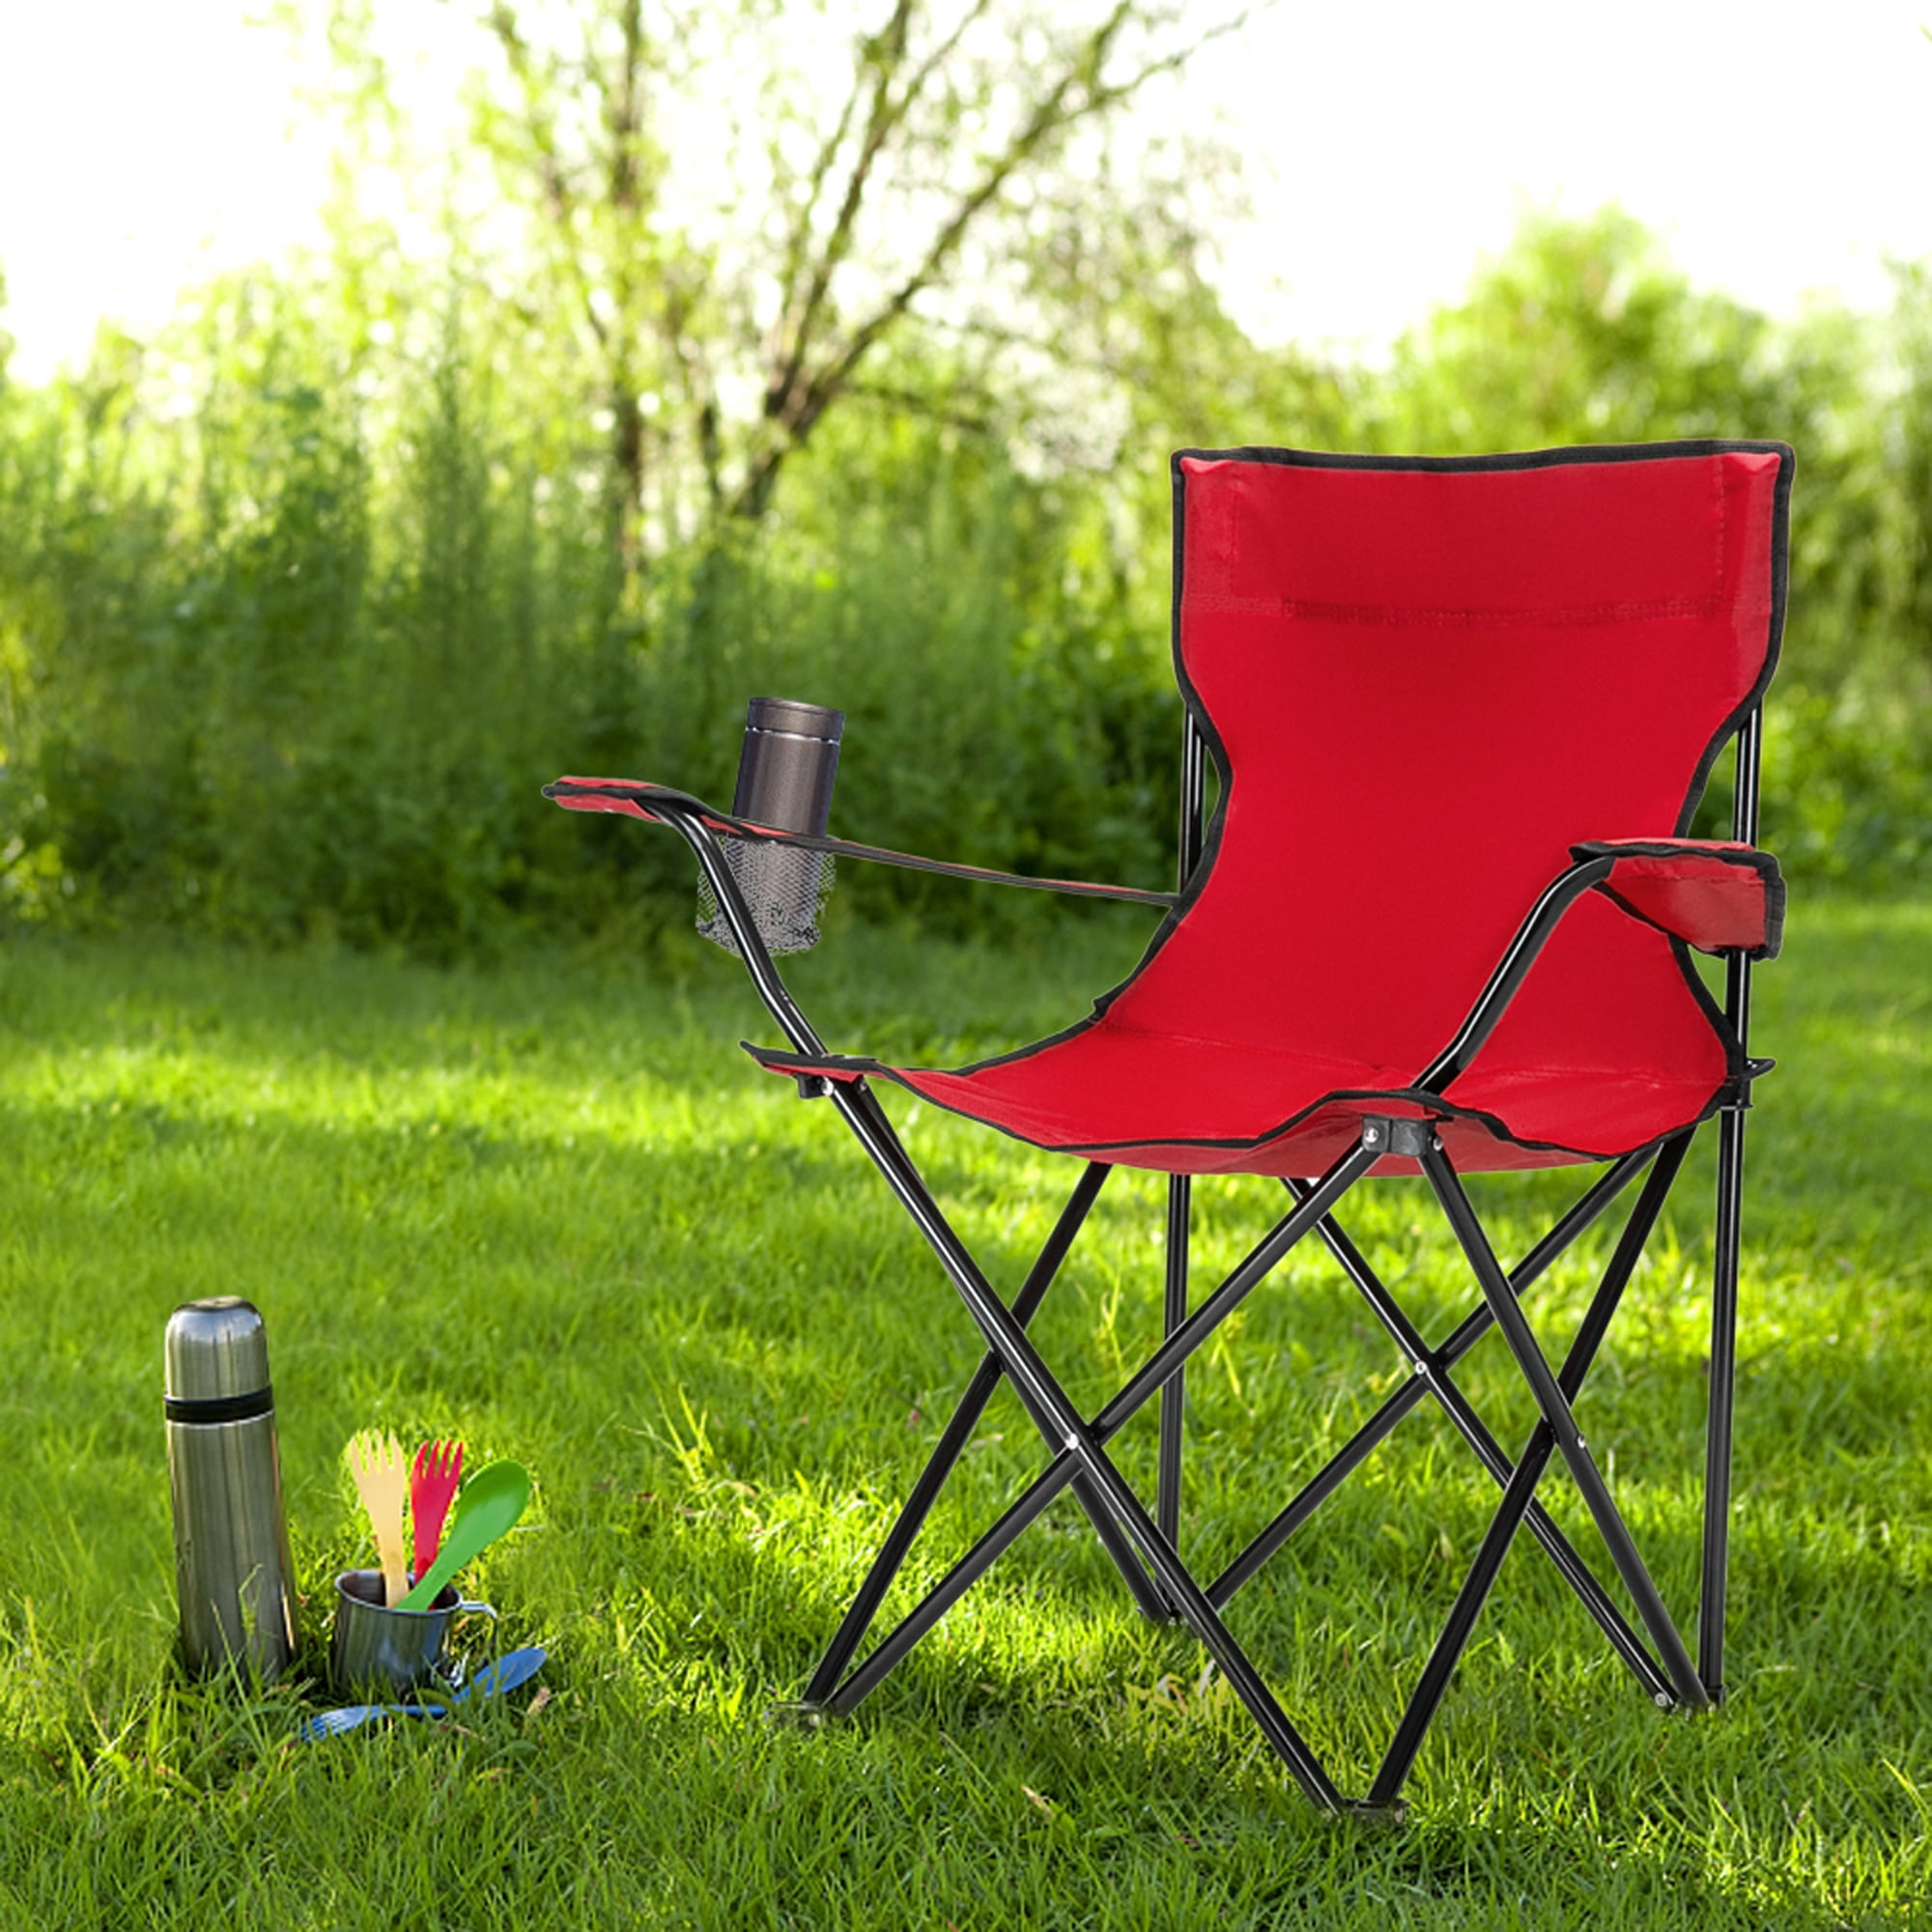 Trailhead® Camp Chair Cup Holder